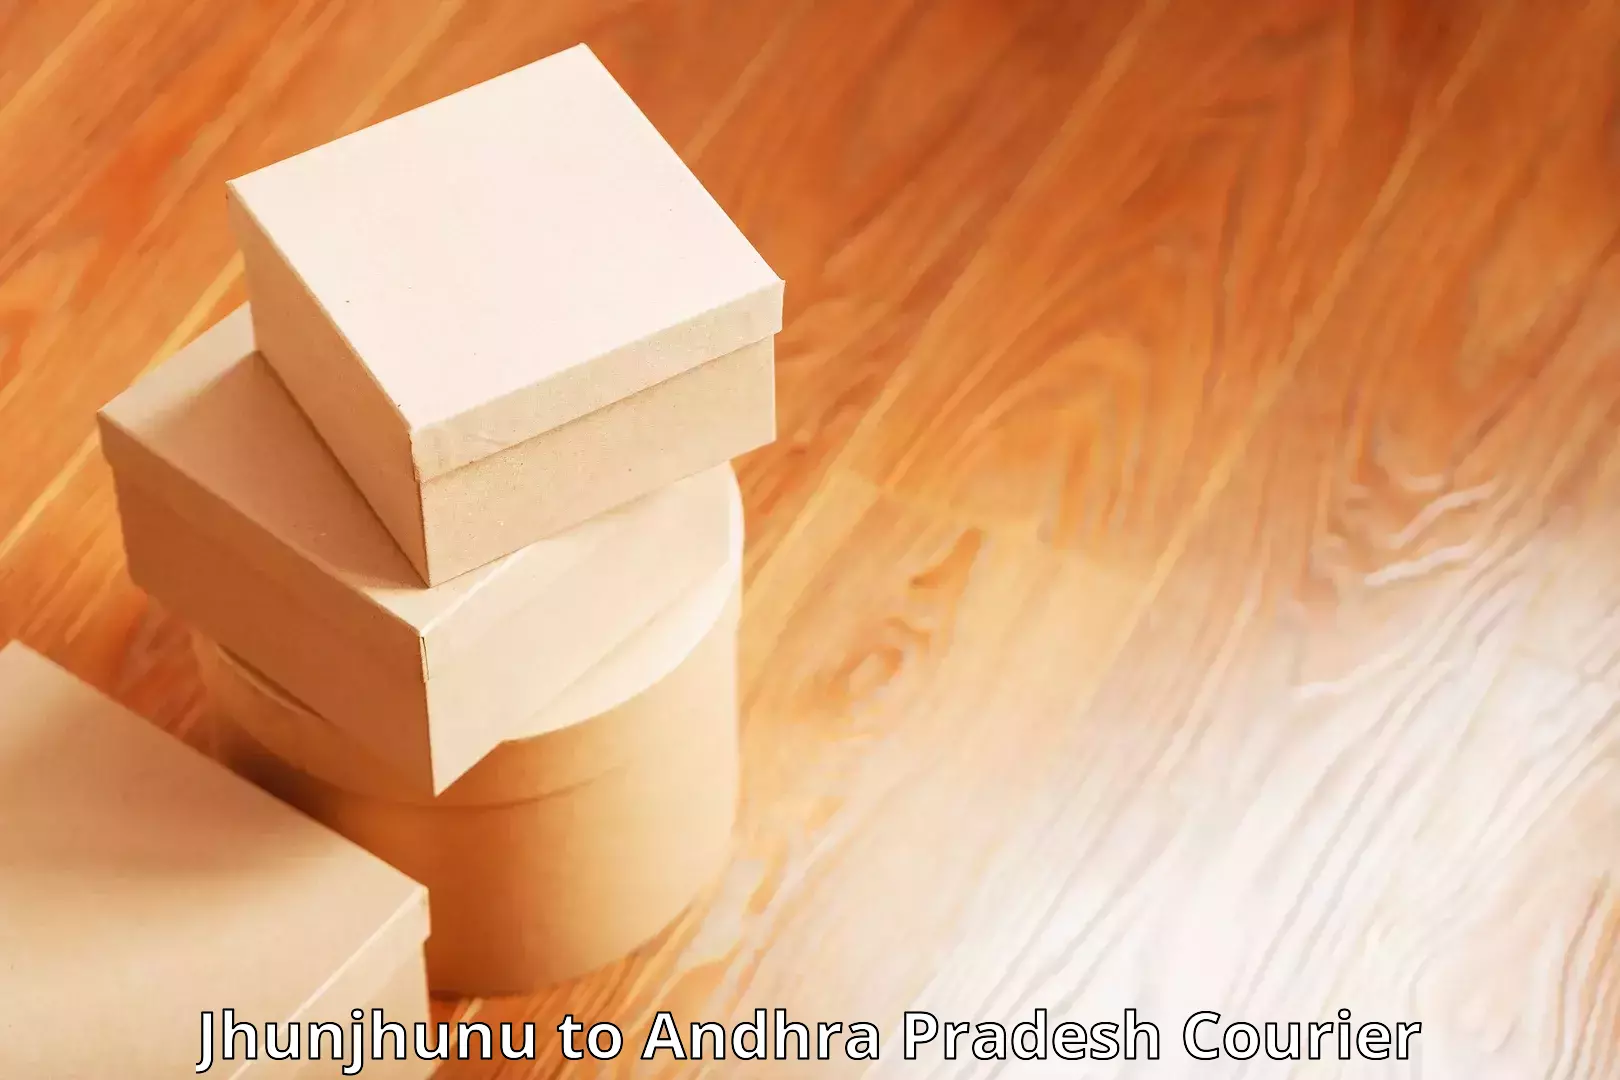 Lightweight parcel options Jhunjhunu to Andhra Pradesh